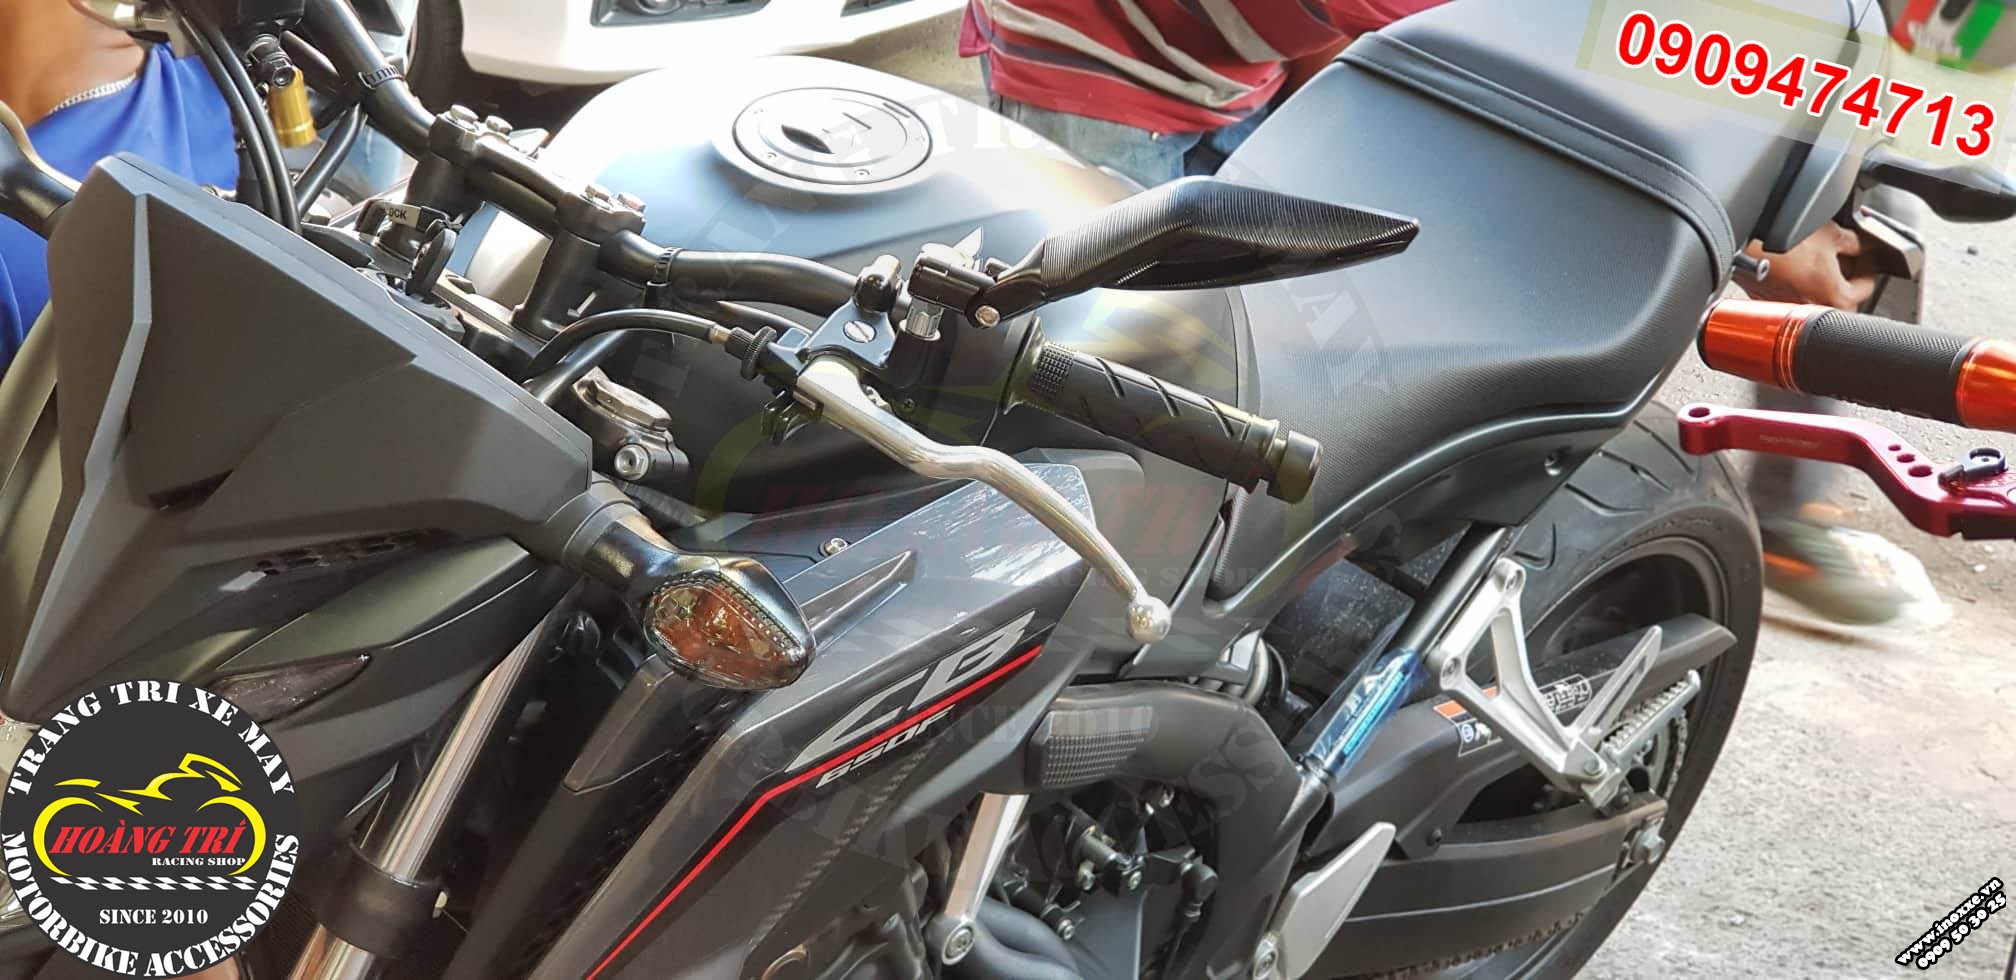 Kiếng hậu Avatar độ Motor CB 650cc